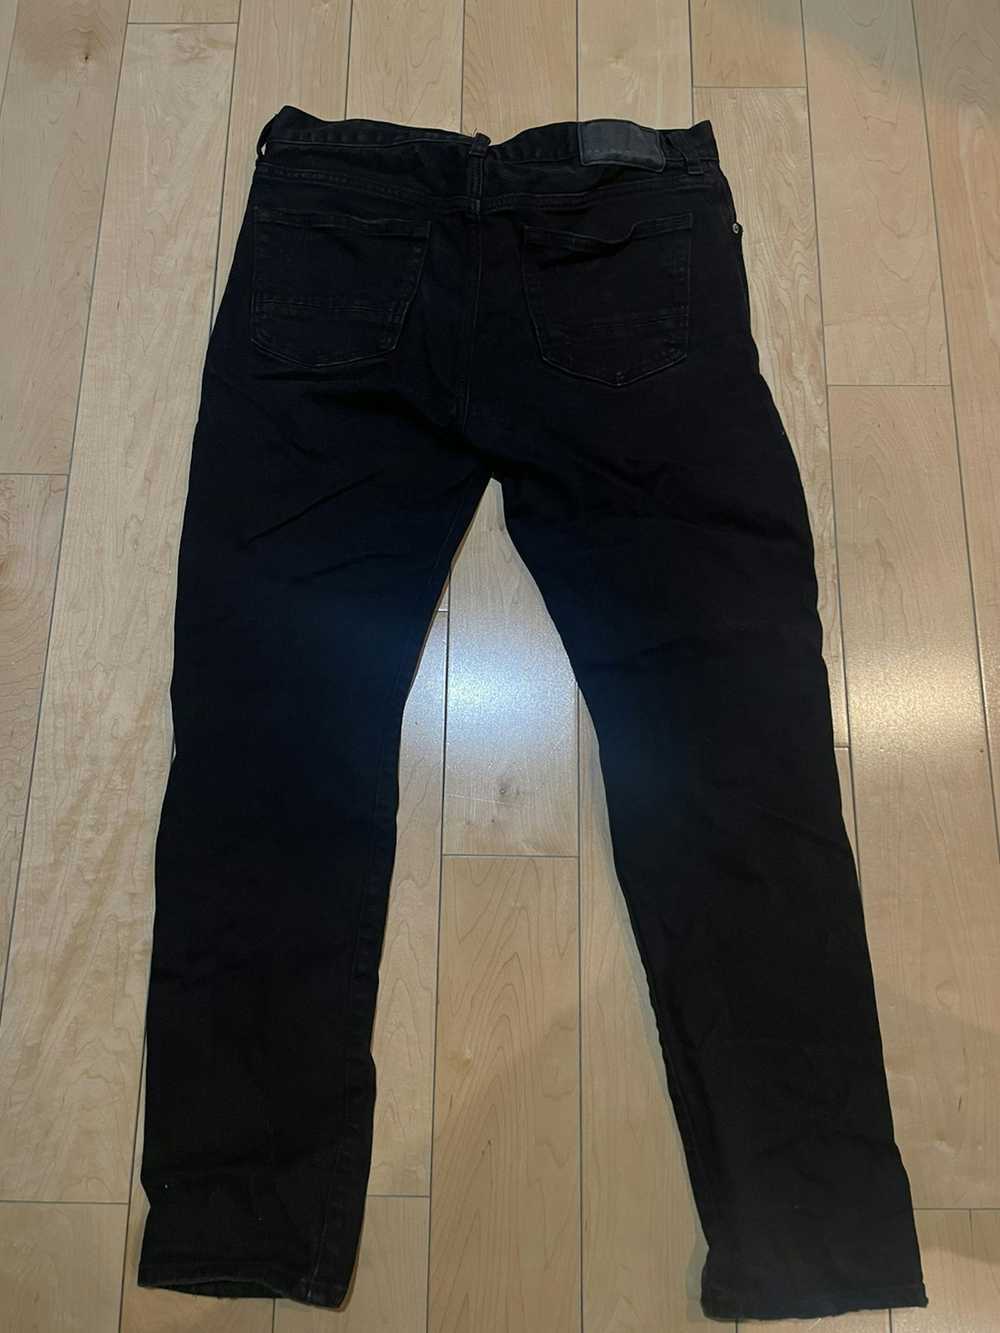 Pacsun Pacsun black slim taper jeans size 30x32 - image 5